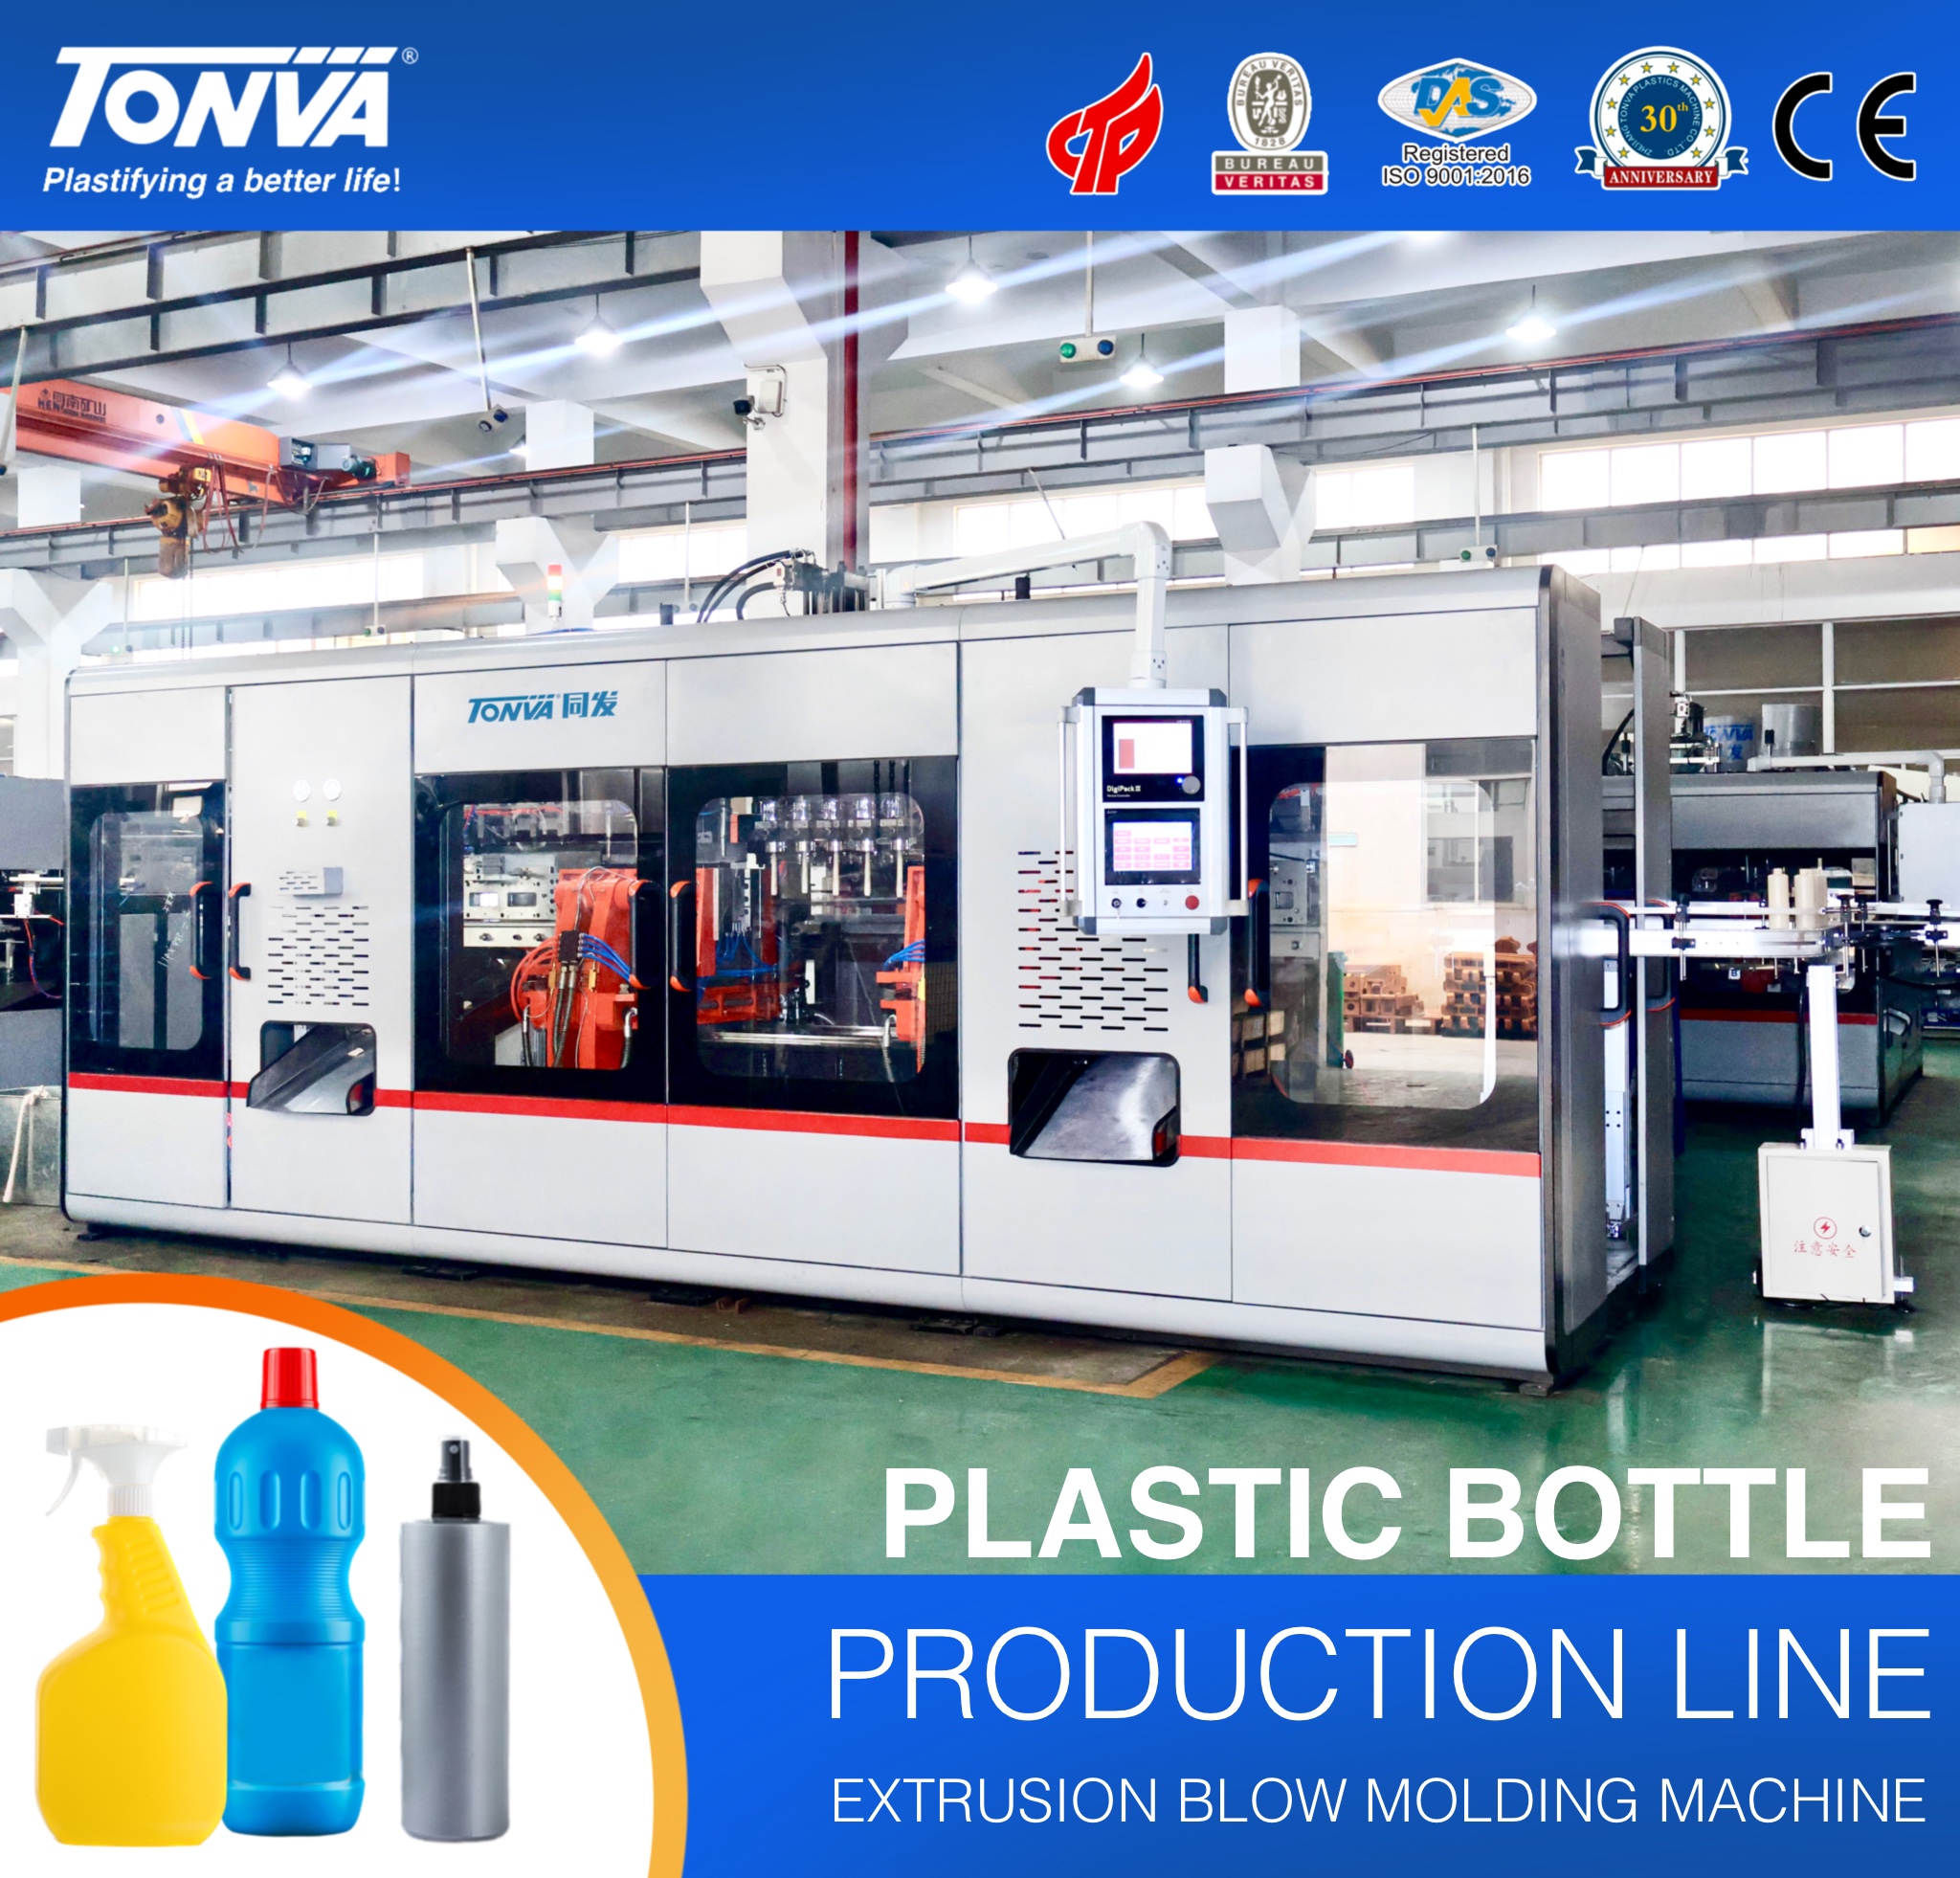 Kunststoff-Extrusionsblasformmaschine zur Herstellung von Kunststoffwaschmittelflaschen, Reinigungsflaschen und Sprühflaschen. Ausgewähltes Bild